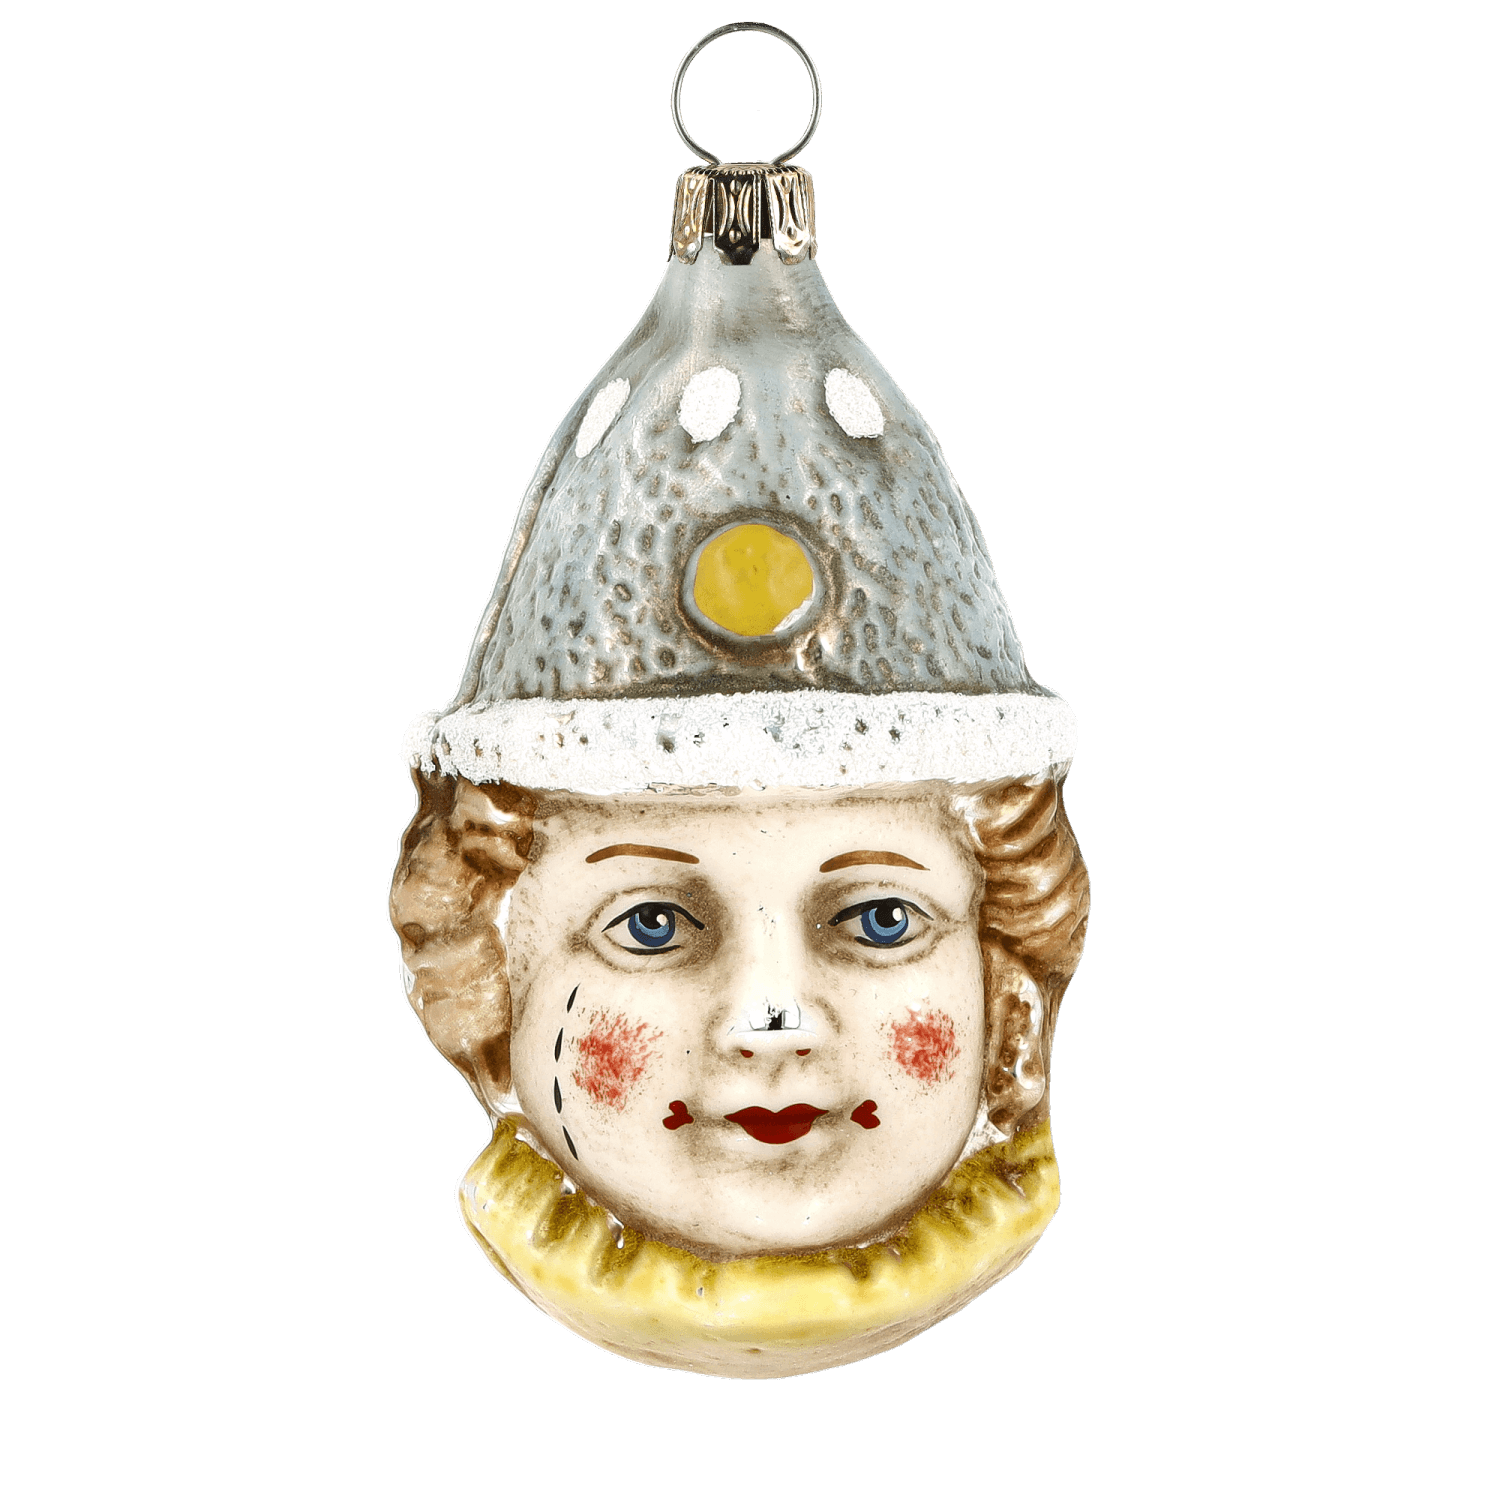 MAROLIN® - Glass ornament "Clown with blue hat"